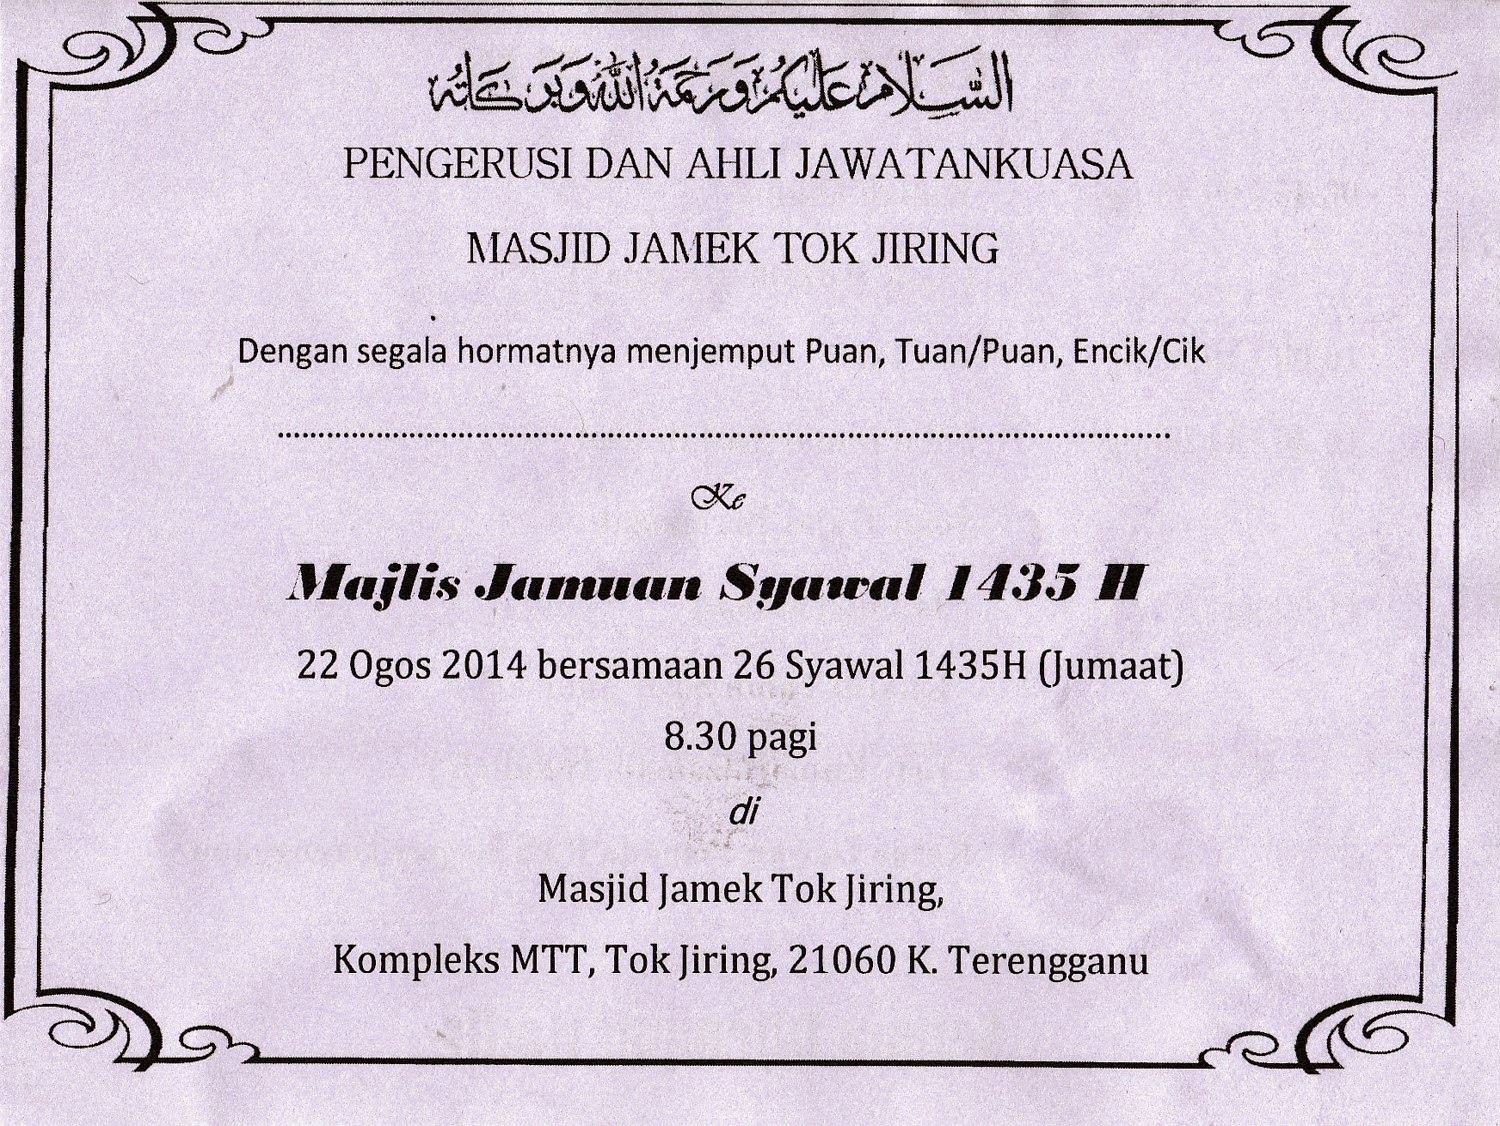 Jemputan Jamuan Hari Raya Masjid Jamek Tok Jiring (22 Ogos 2014